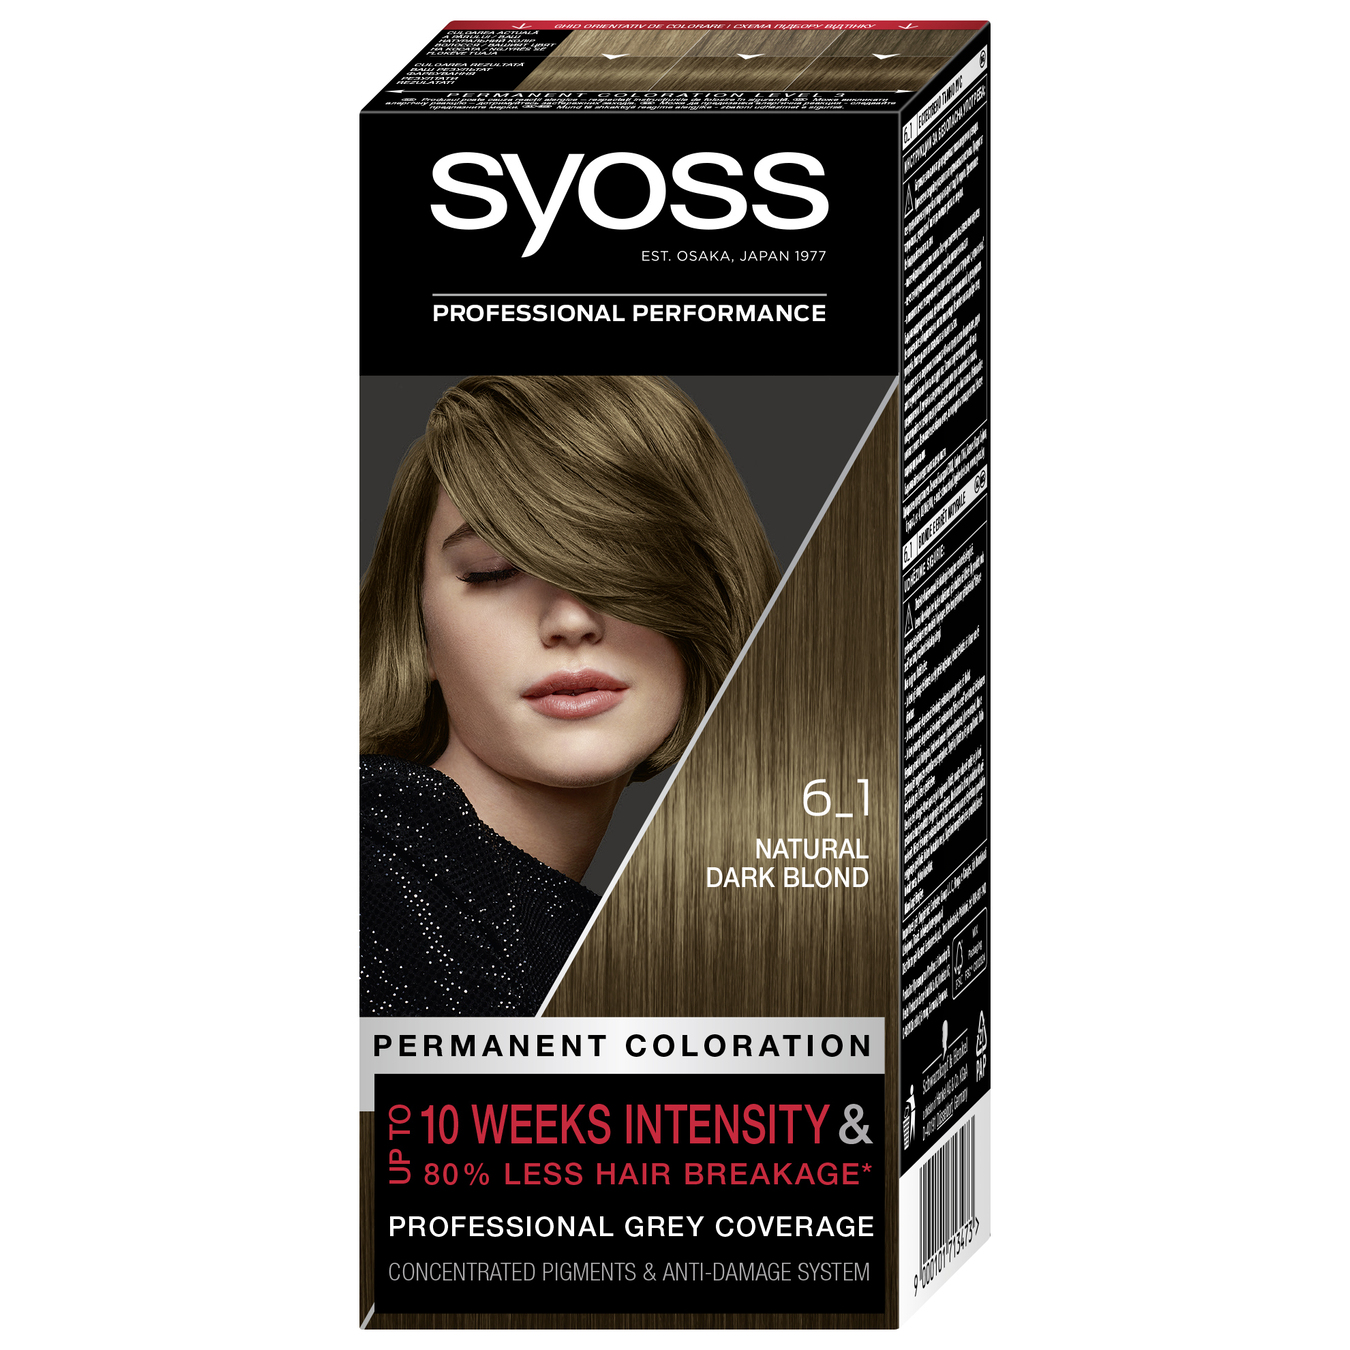 Фабра для волос Syoss 6-1 насыщенный темно-русый